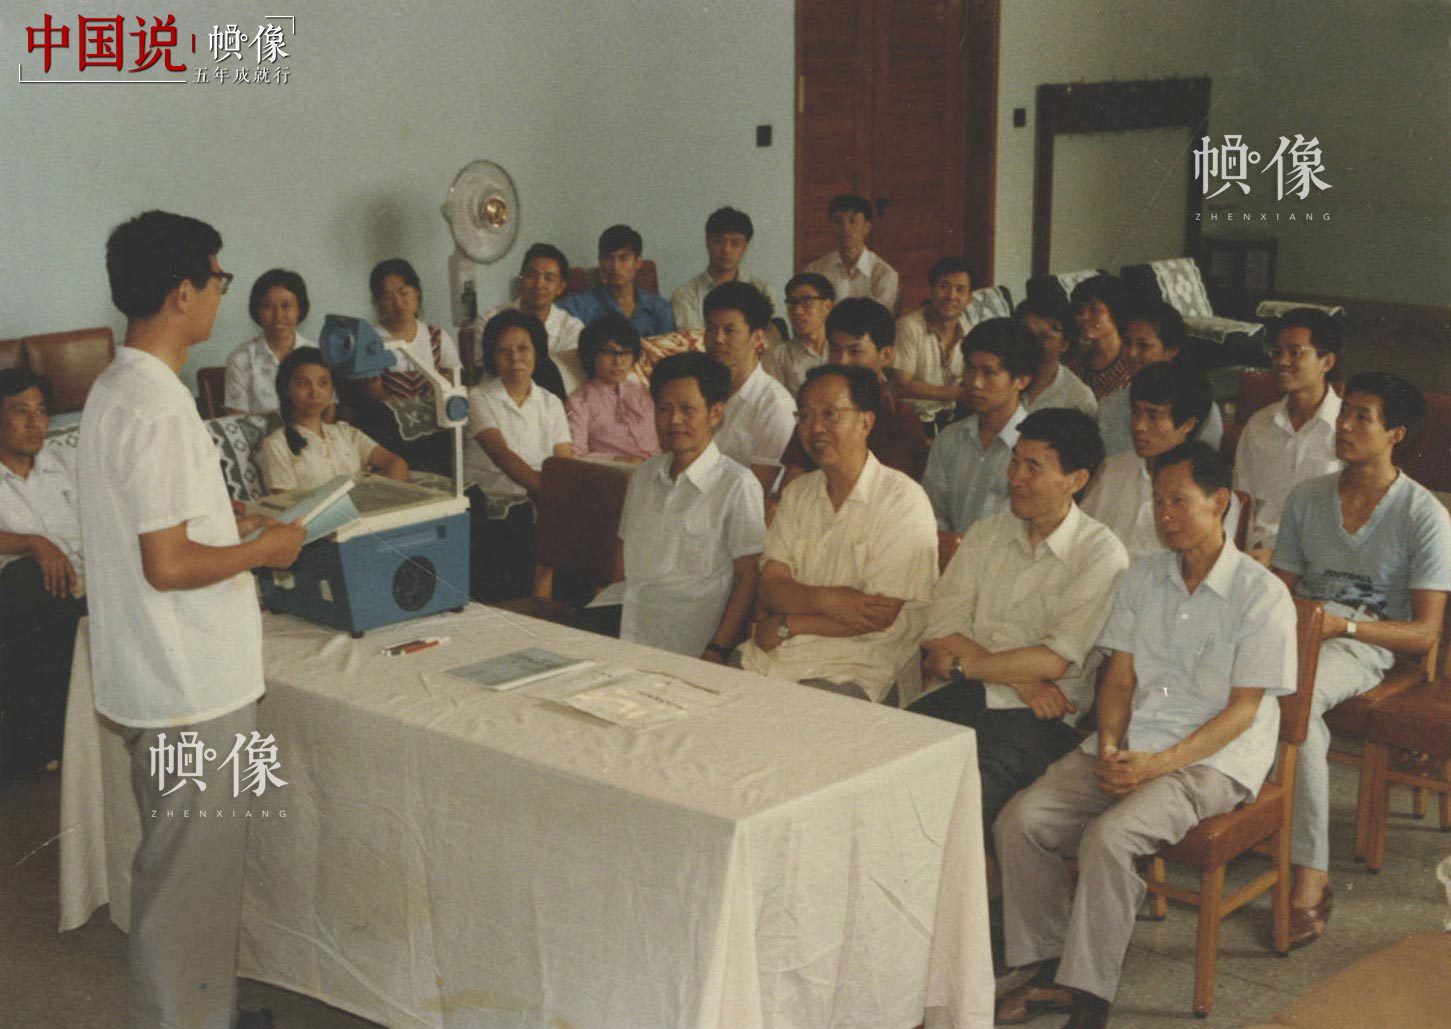 清华大学自动化系信息教研组研究生答辩会。